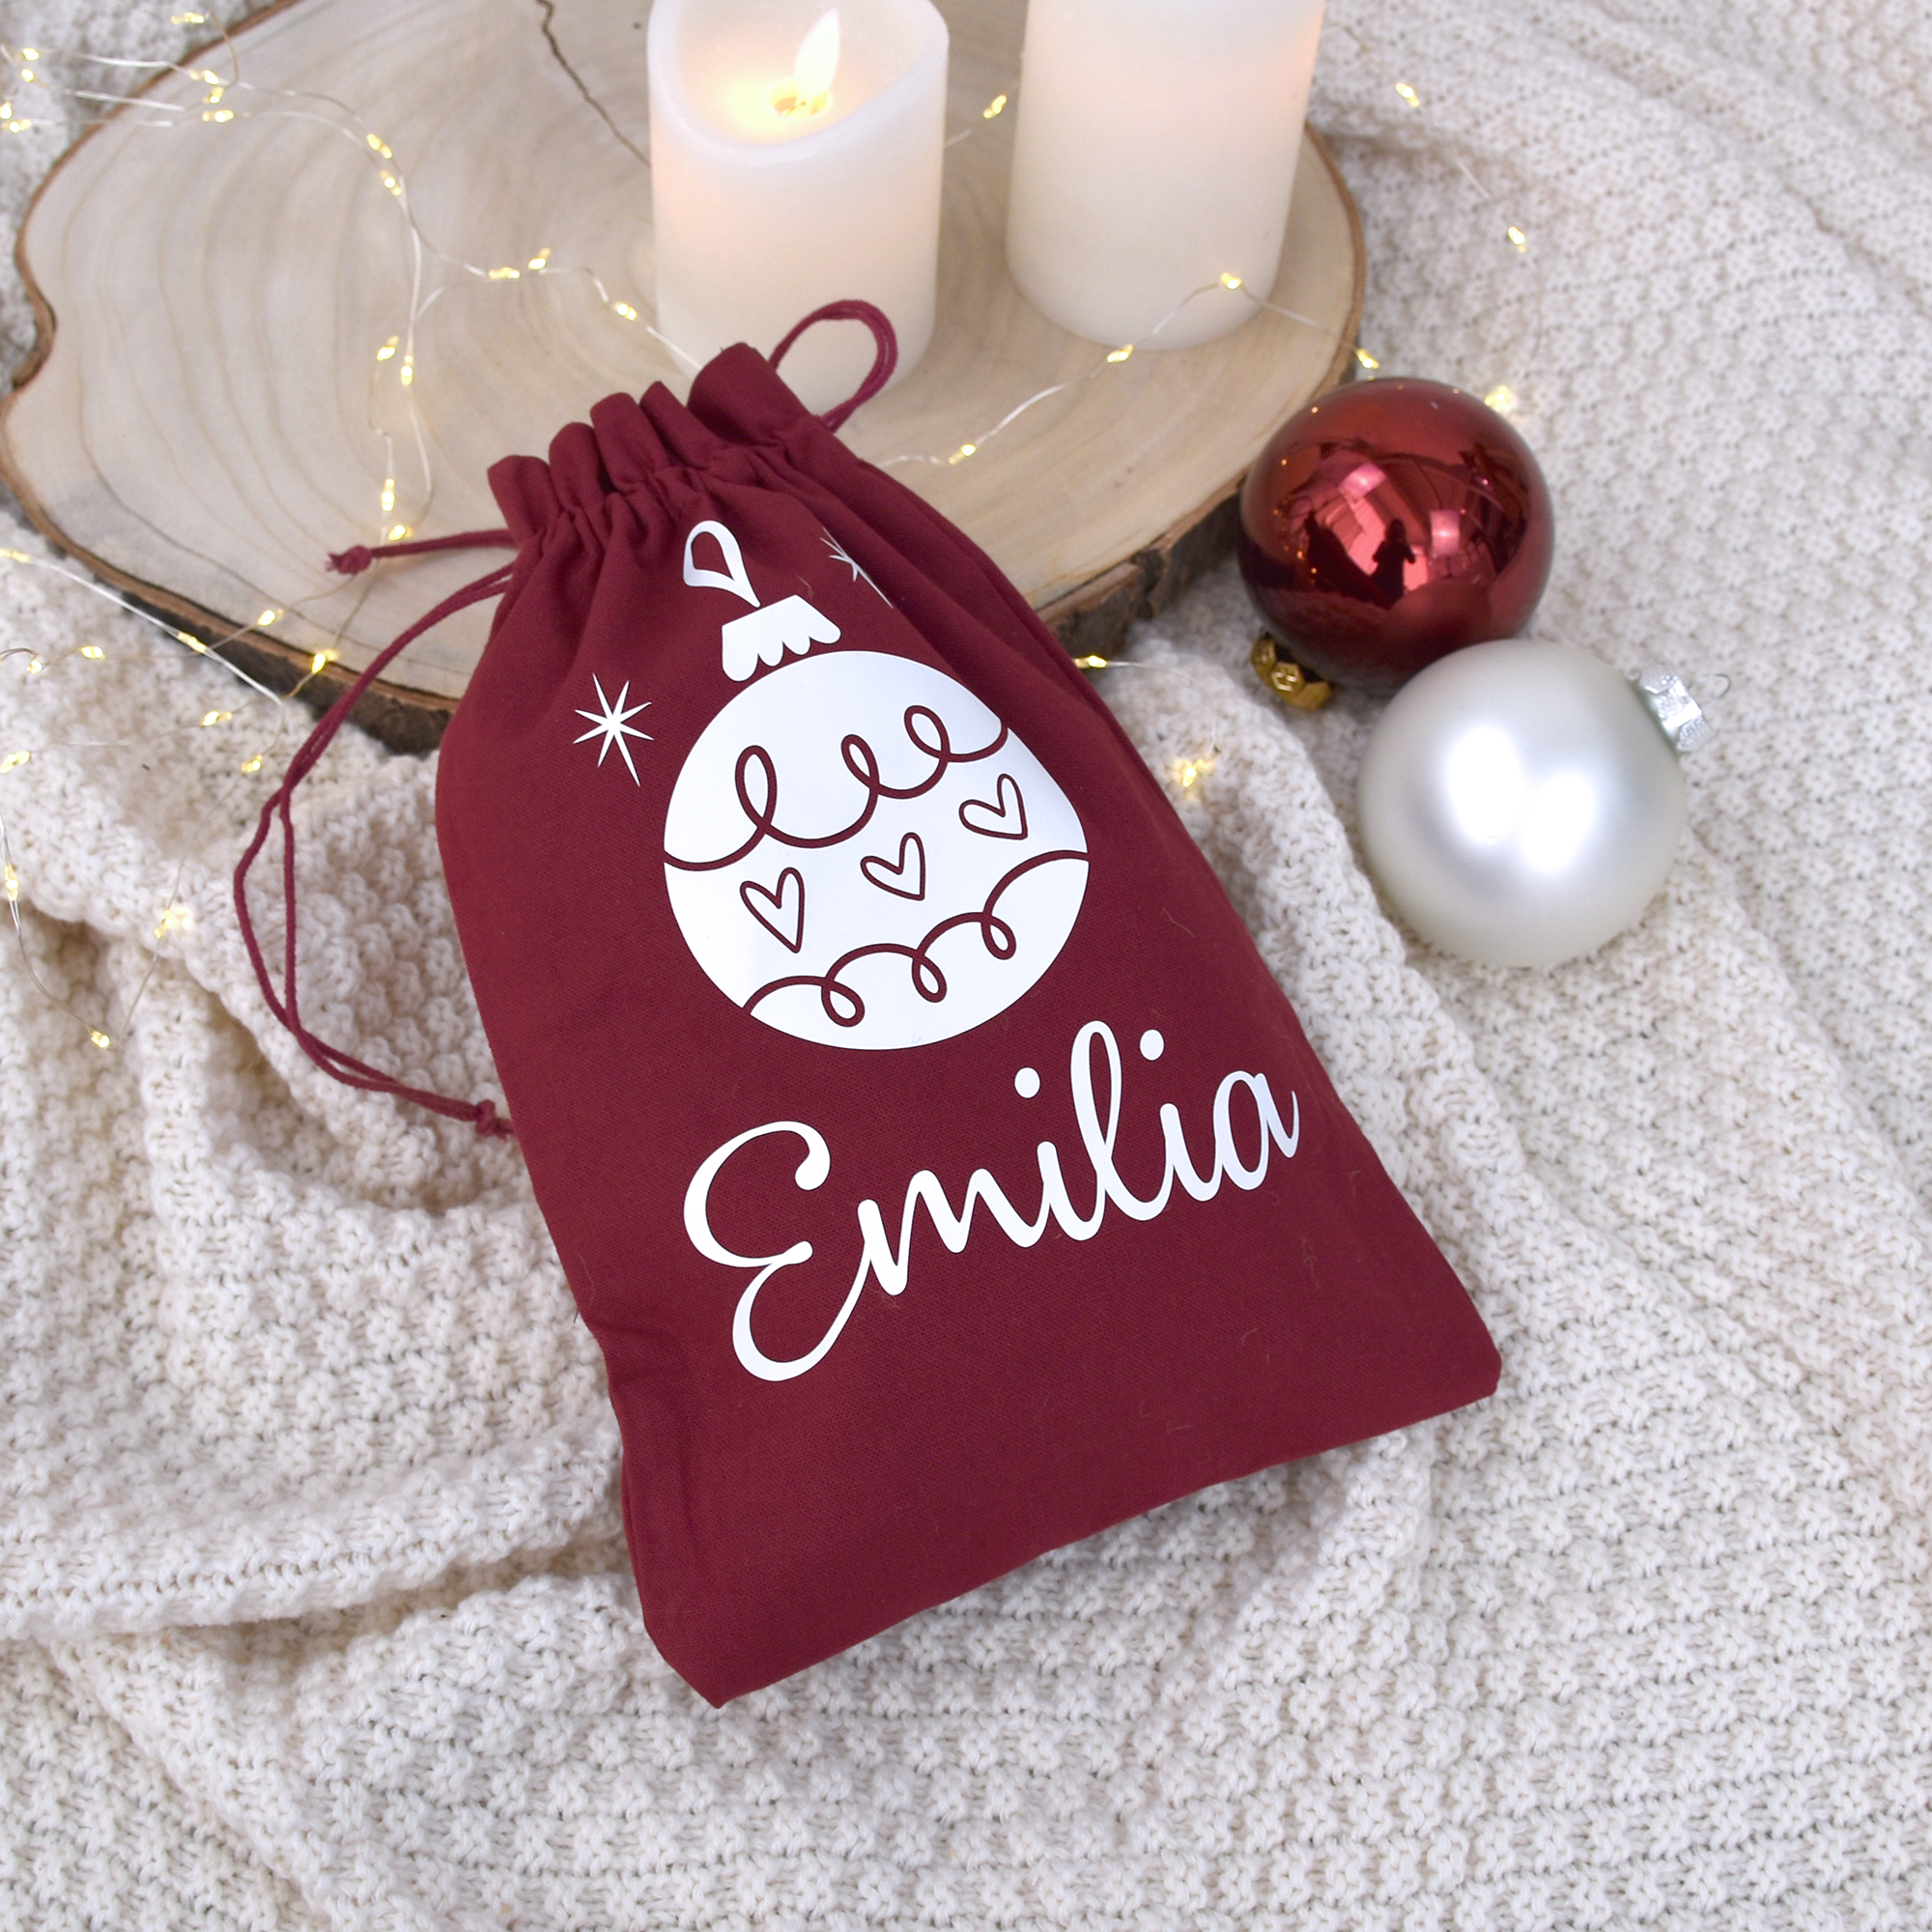 Geschenkbeutel Weihnachten aus Baumwolle Bordeaux-Rot | Christbaumkugel und Namen